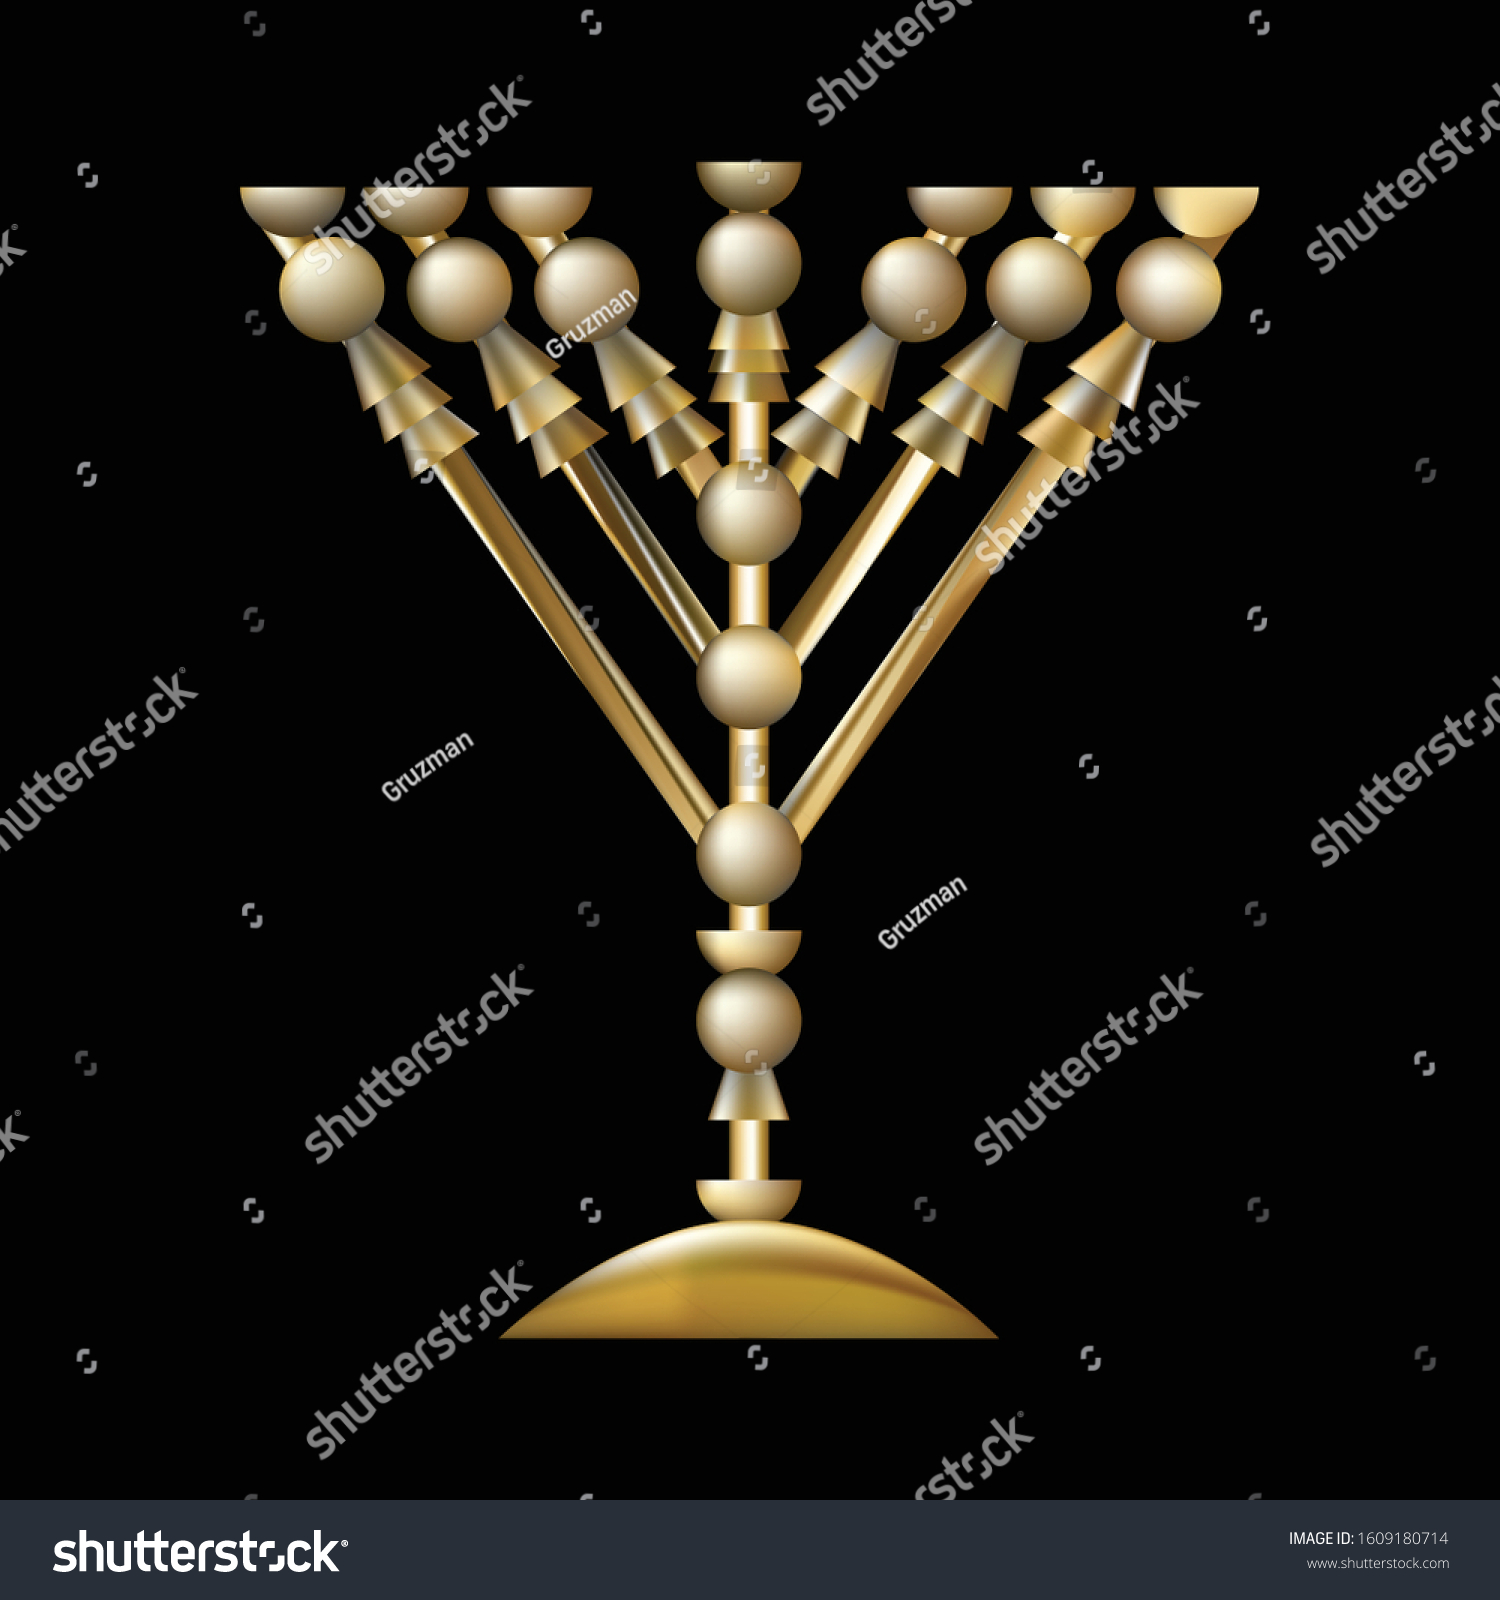 מנורת הזהב המקדש תלת מימד וקטורי -1609180714